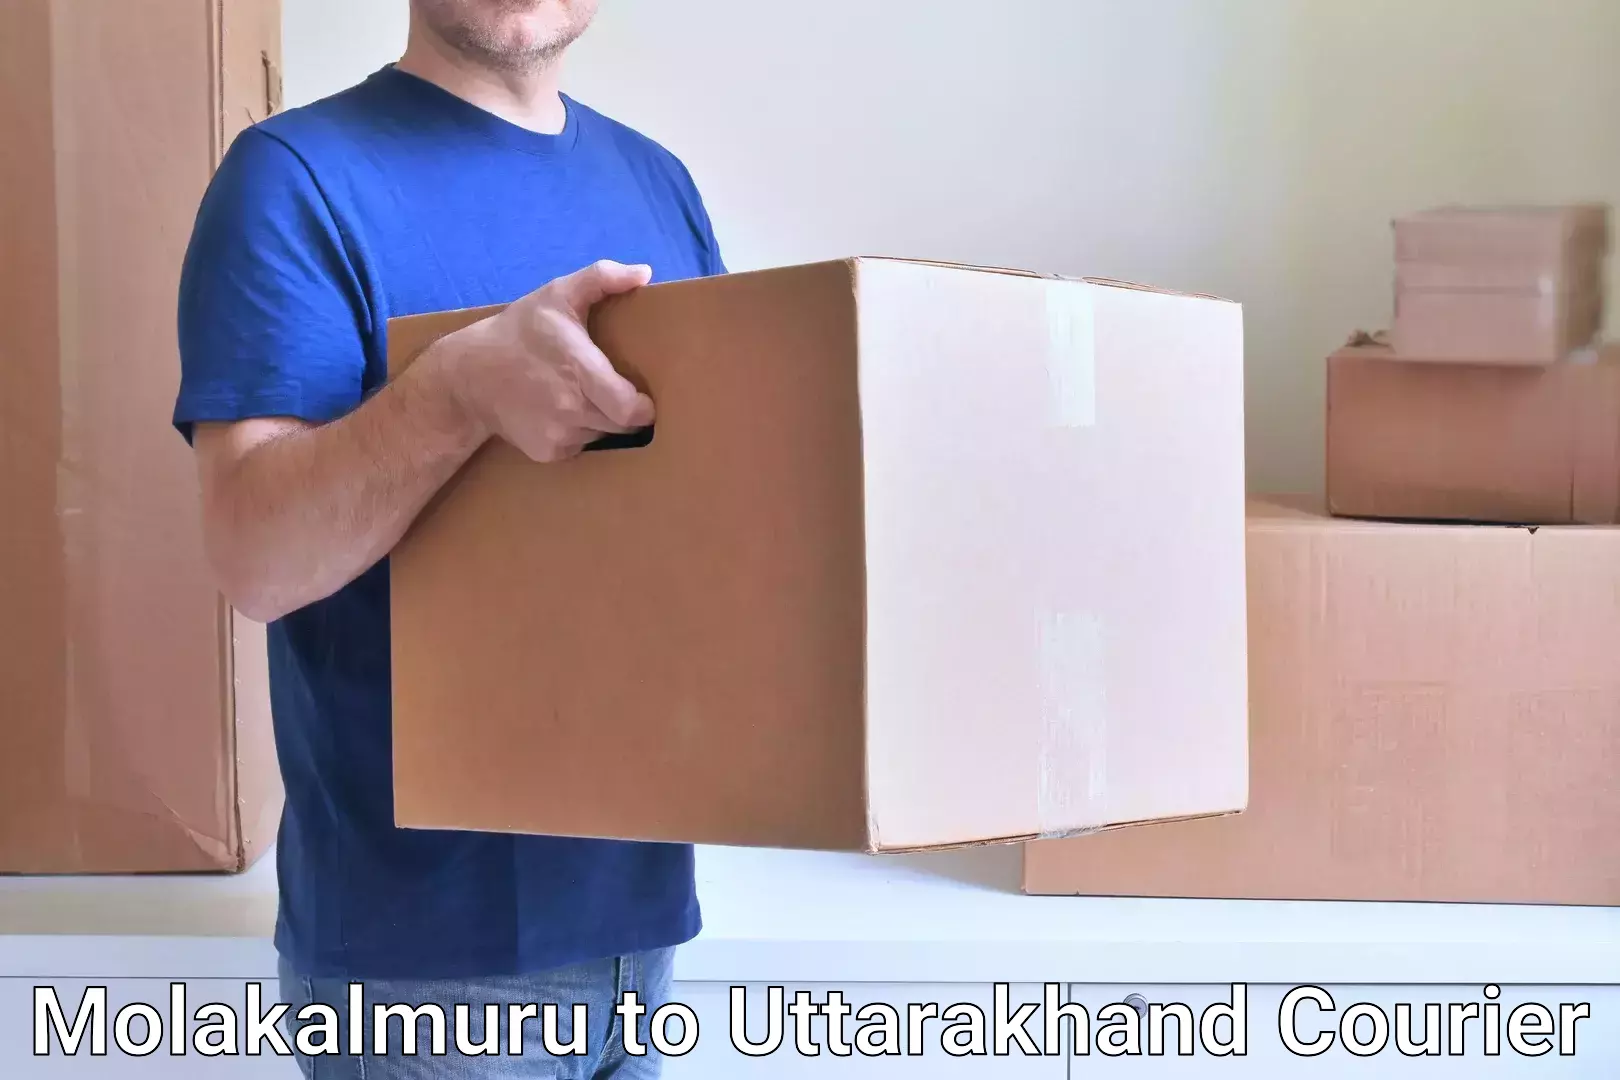 Next-generation courier services Molakalmuru to Roorkee